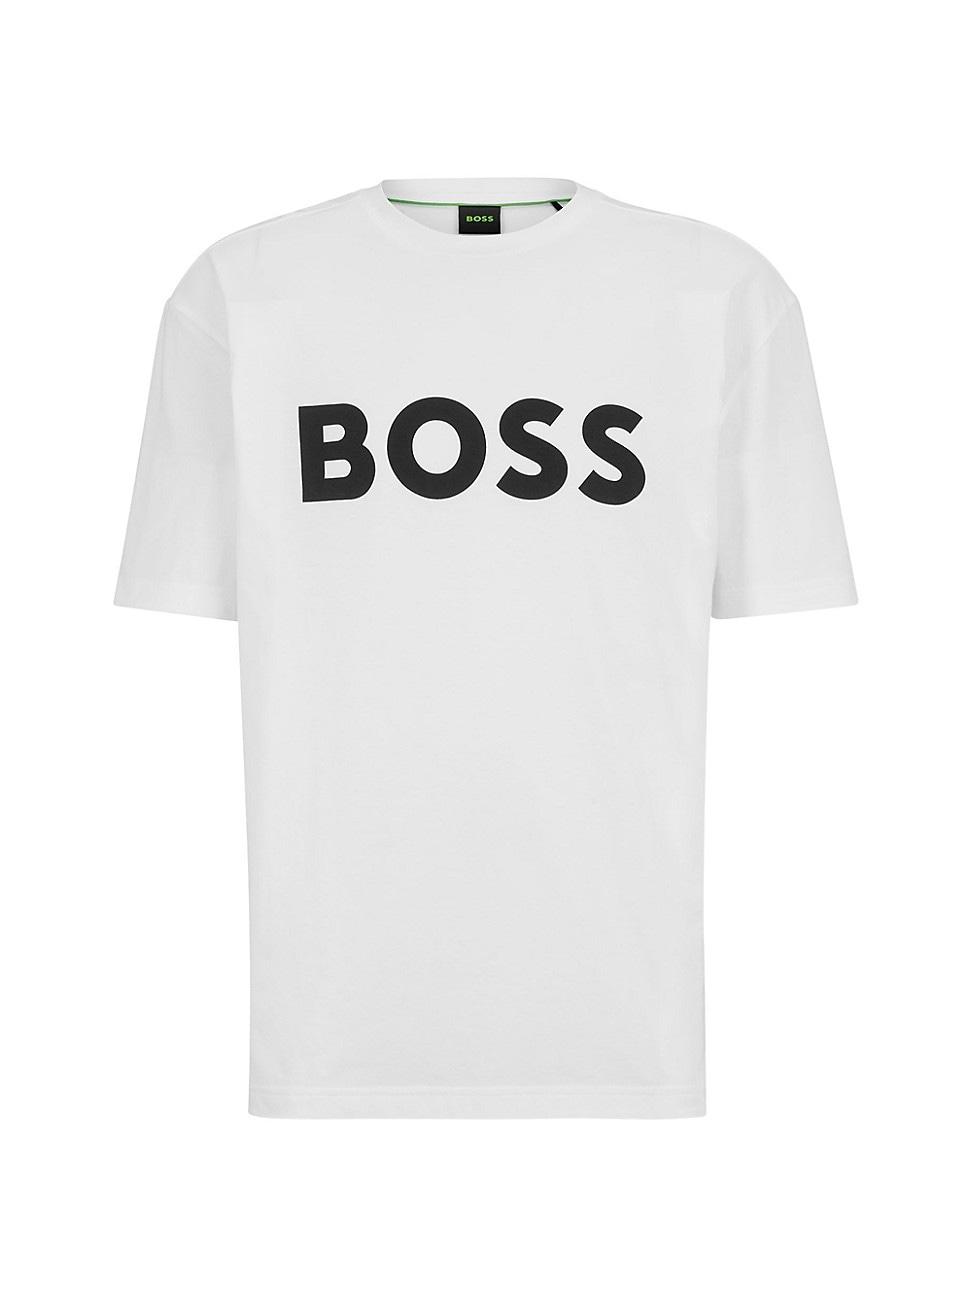 BOSS by HUGO BOSS T-shirt in White for Men | Lyst